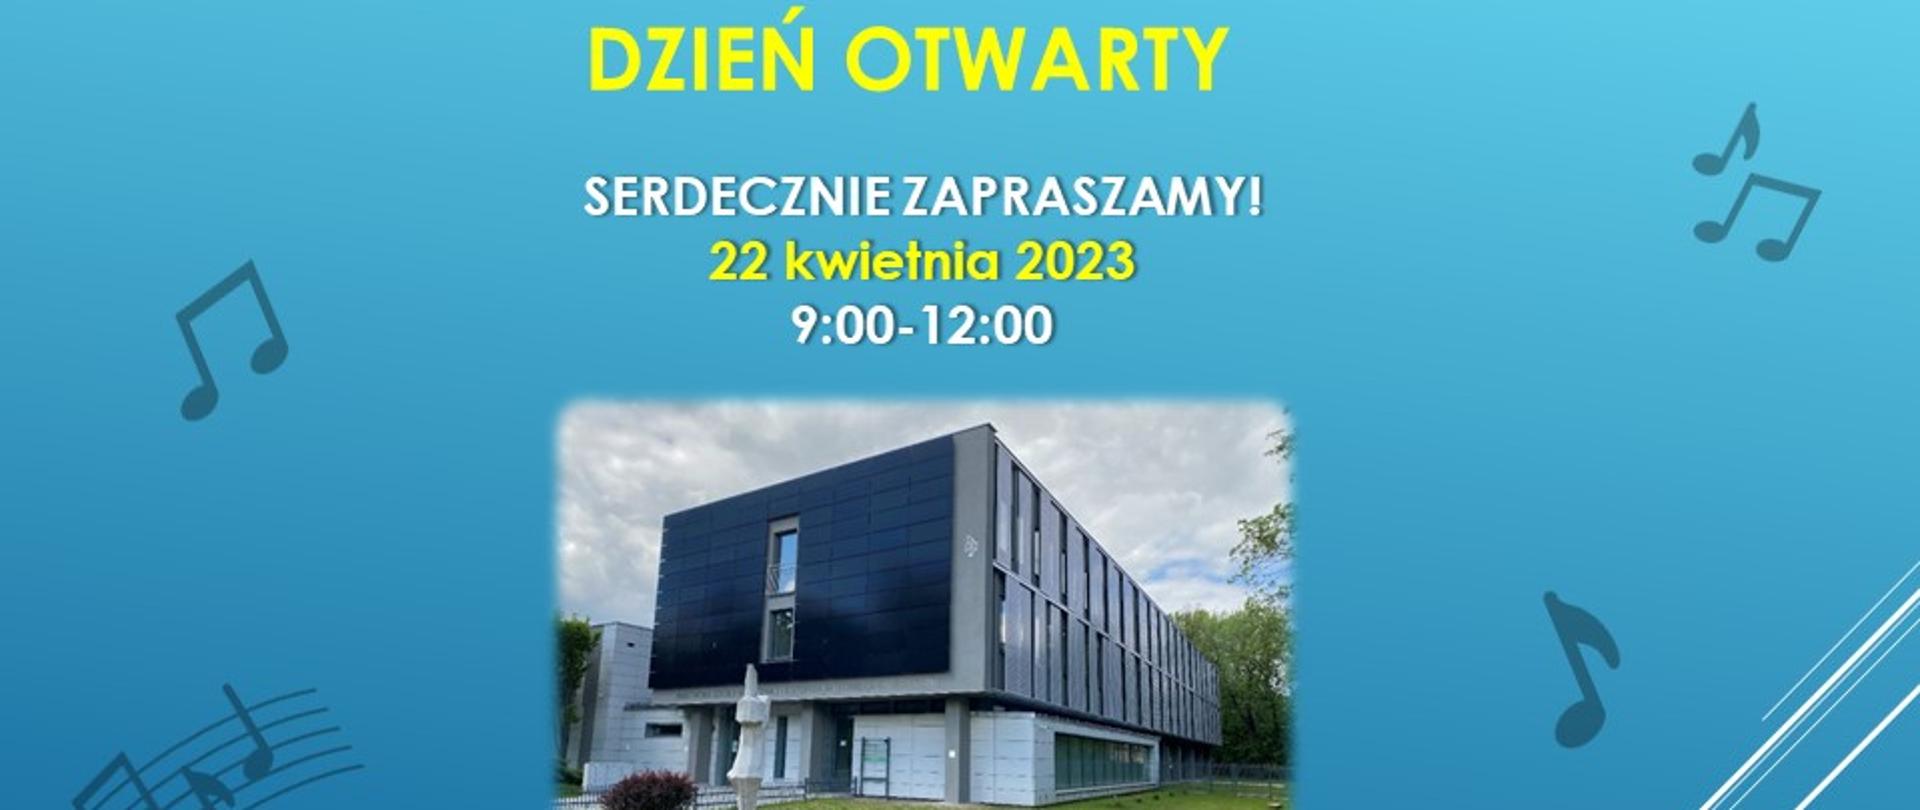 Na niebieskim tle informacja na temat dnia otwartego i zdjęcie budynku szkoły